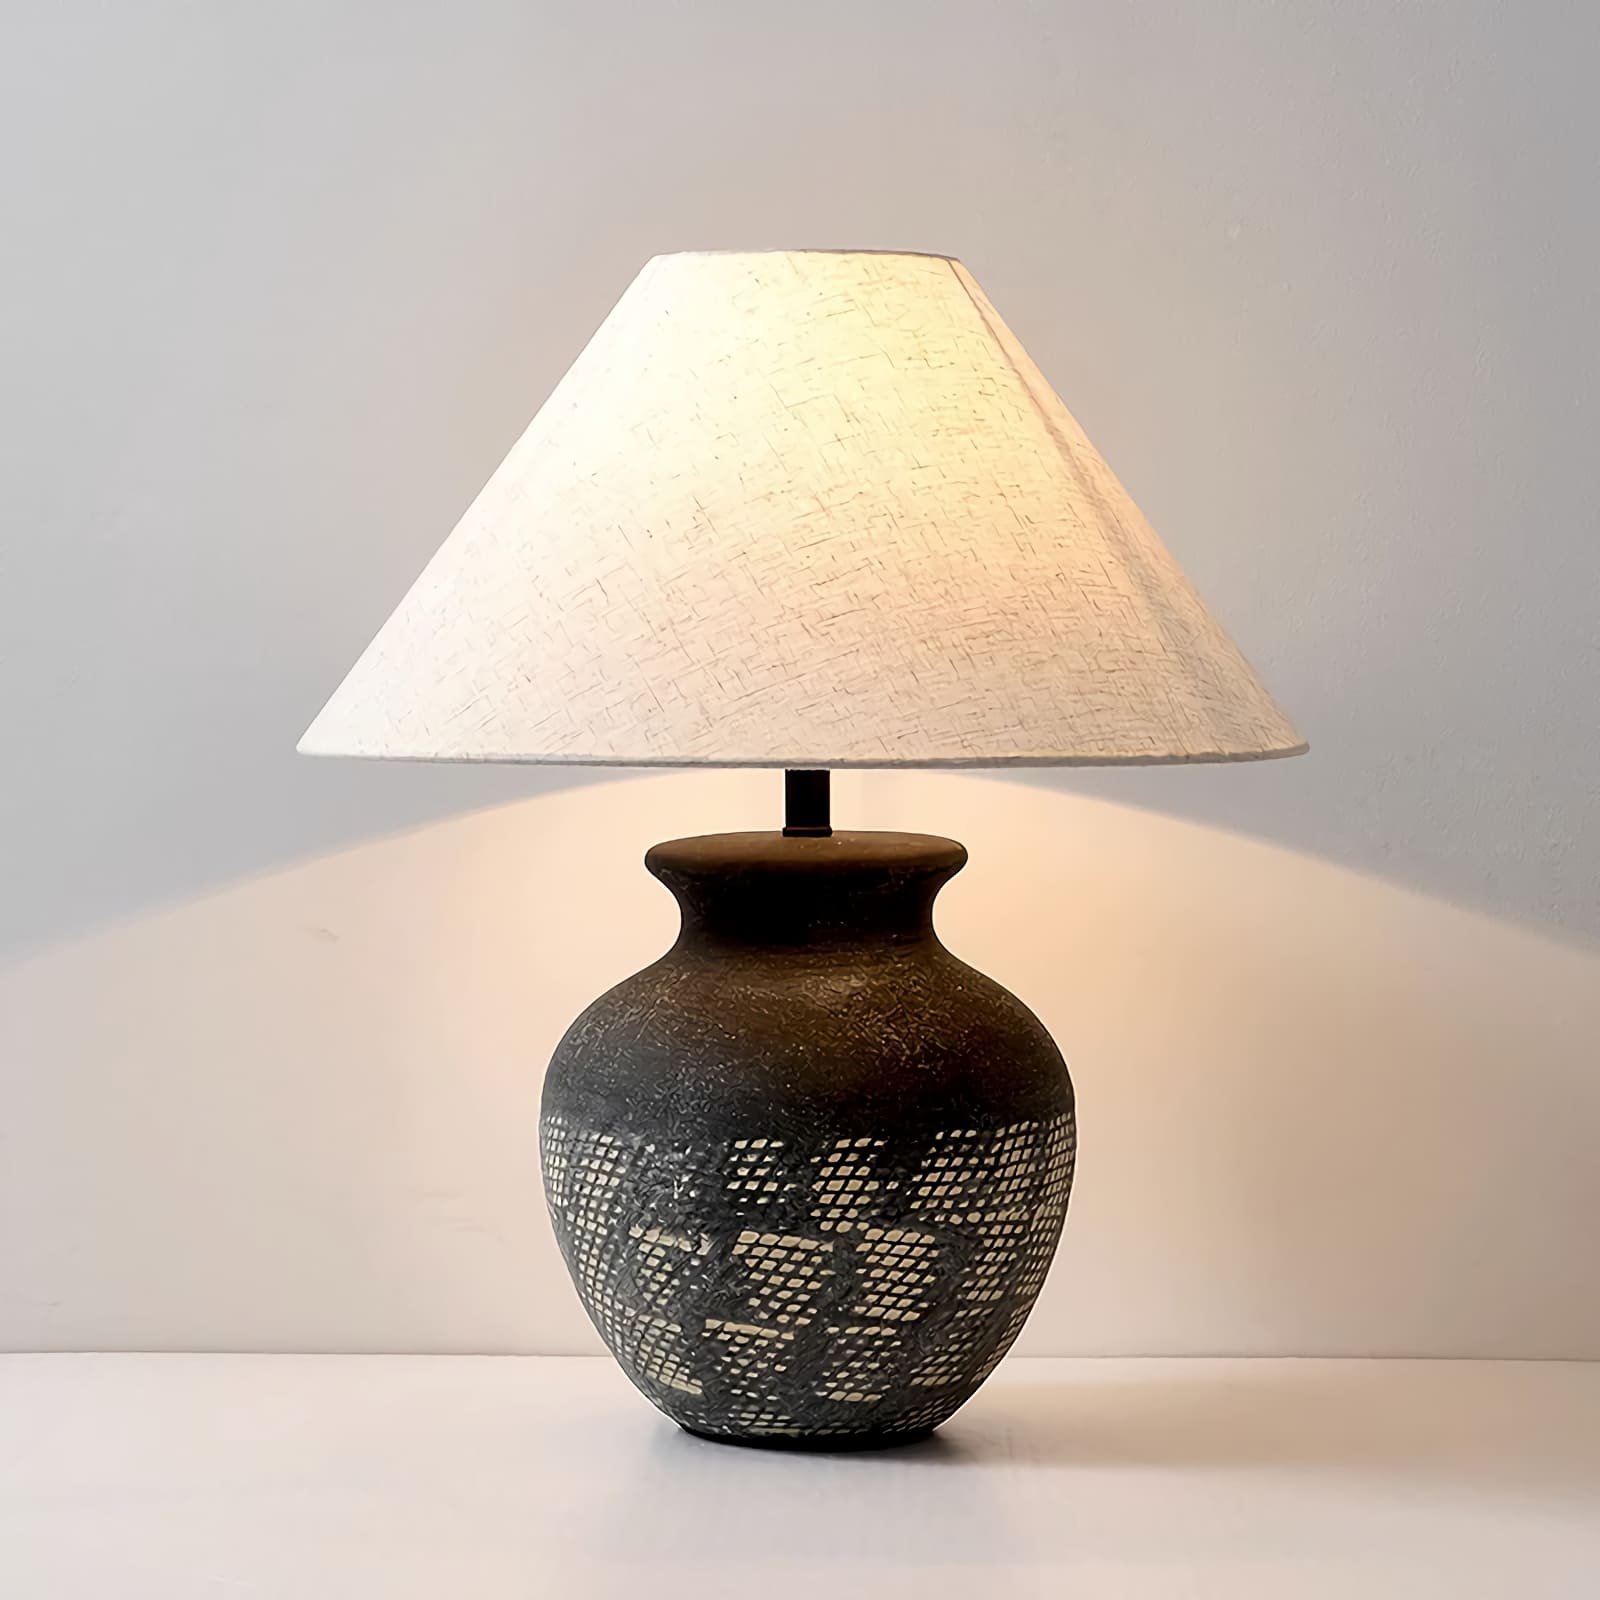 Retro Ceramic Table Lamp - Vinlighting